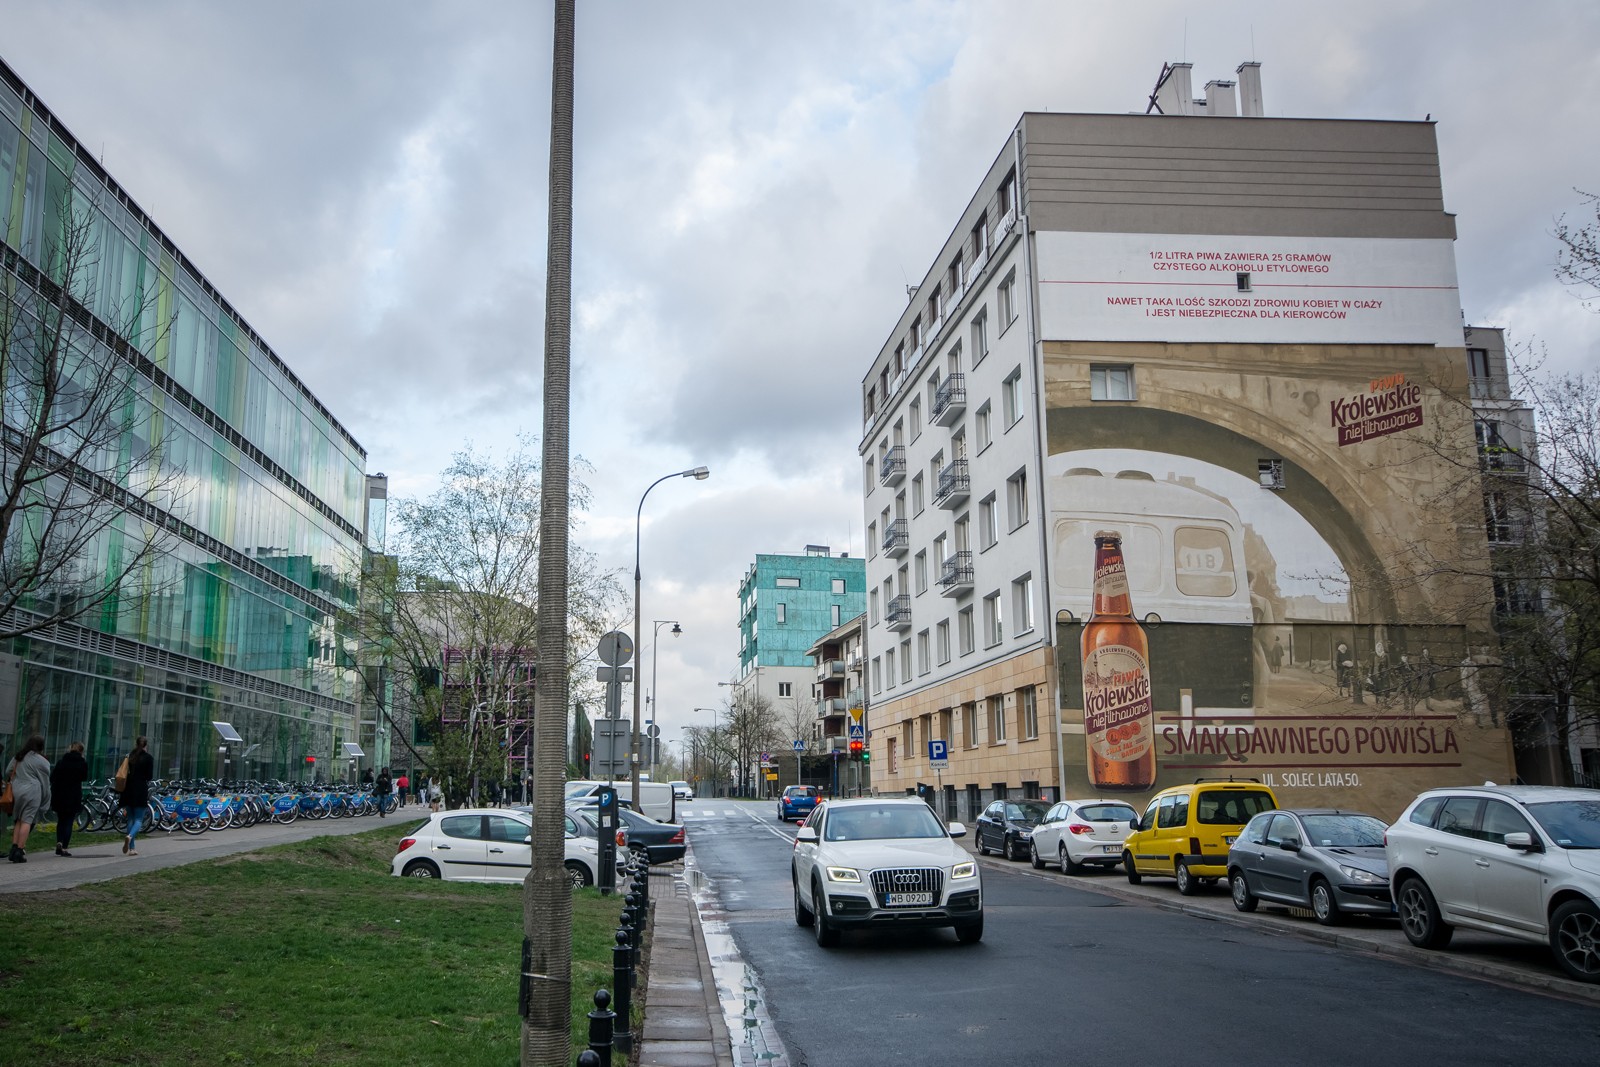 An advertisement mural on Lipowa street in Warsaw for Krolewskie Niefiltrowane | Ręcznie malowana kampania reklamowa dla marki Królewskie | Portfolio